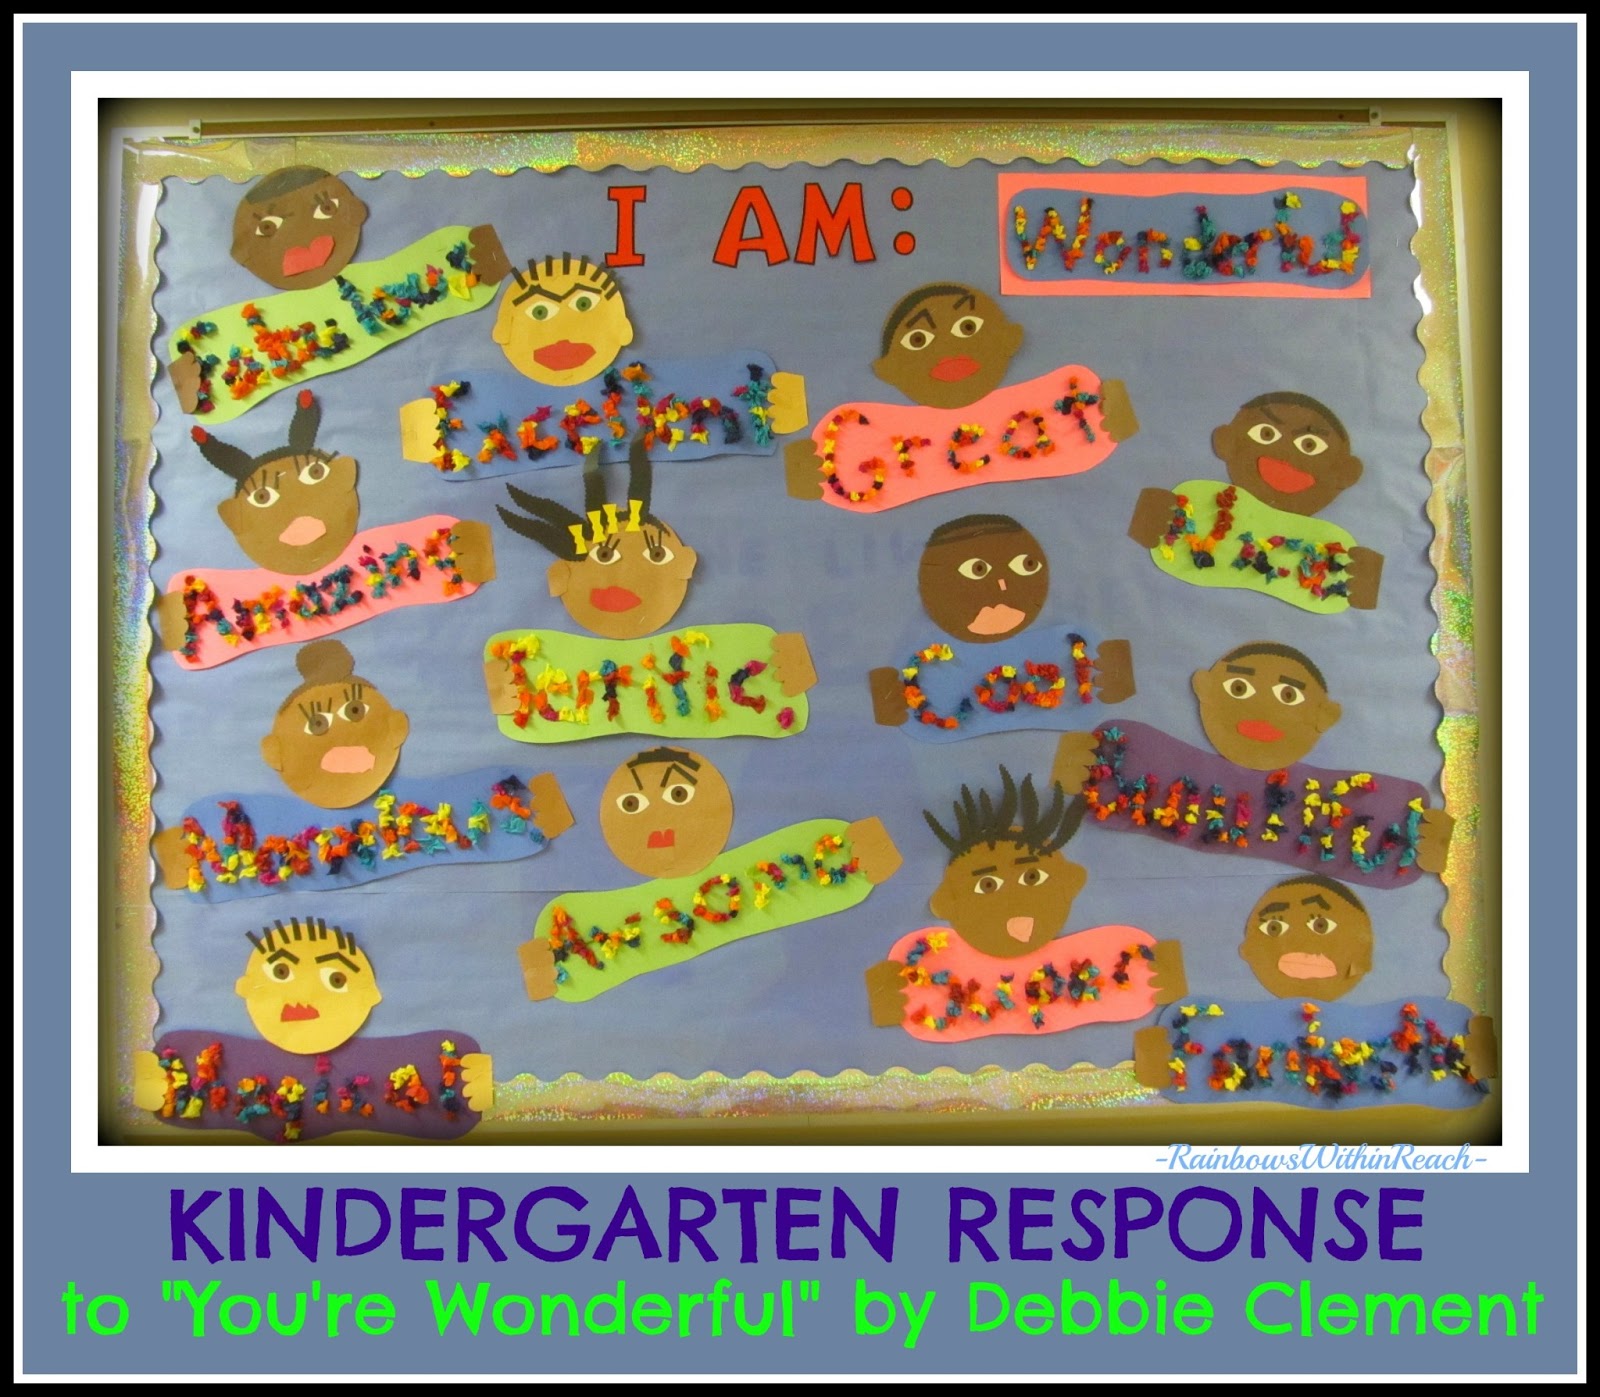 You're+Wonderful+Bulletin+Board - Kindergarten Bulletin Board